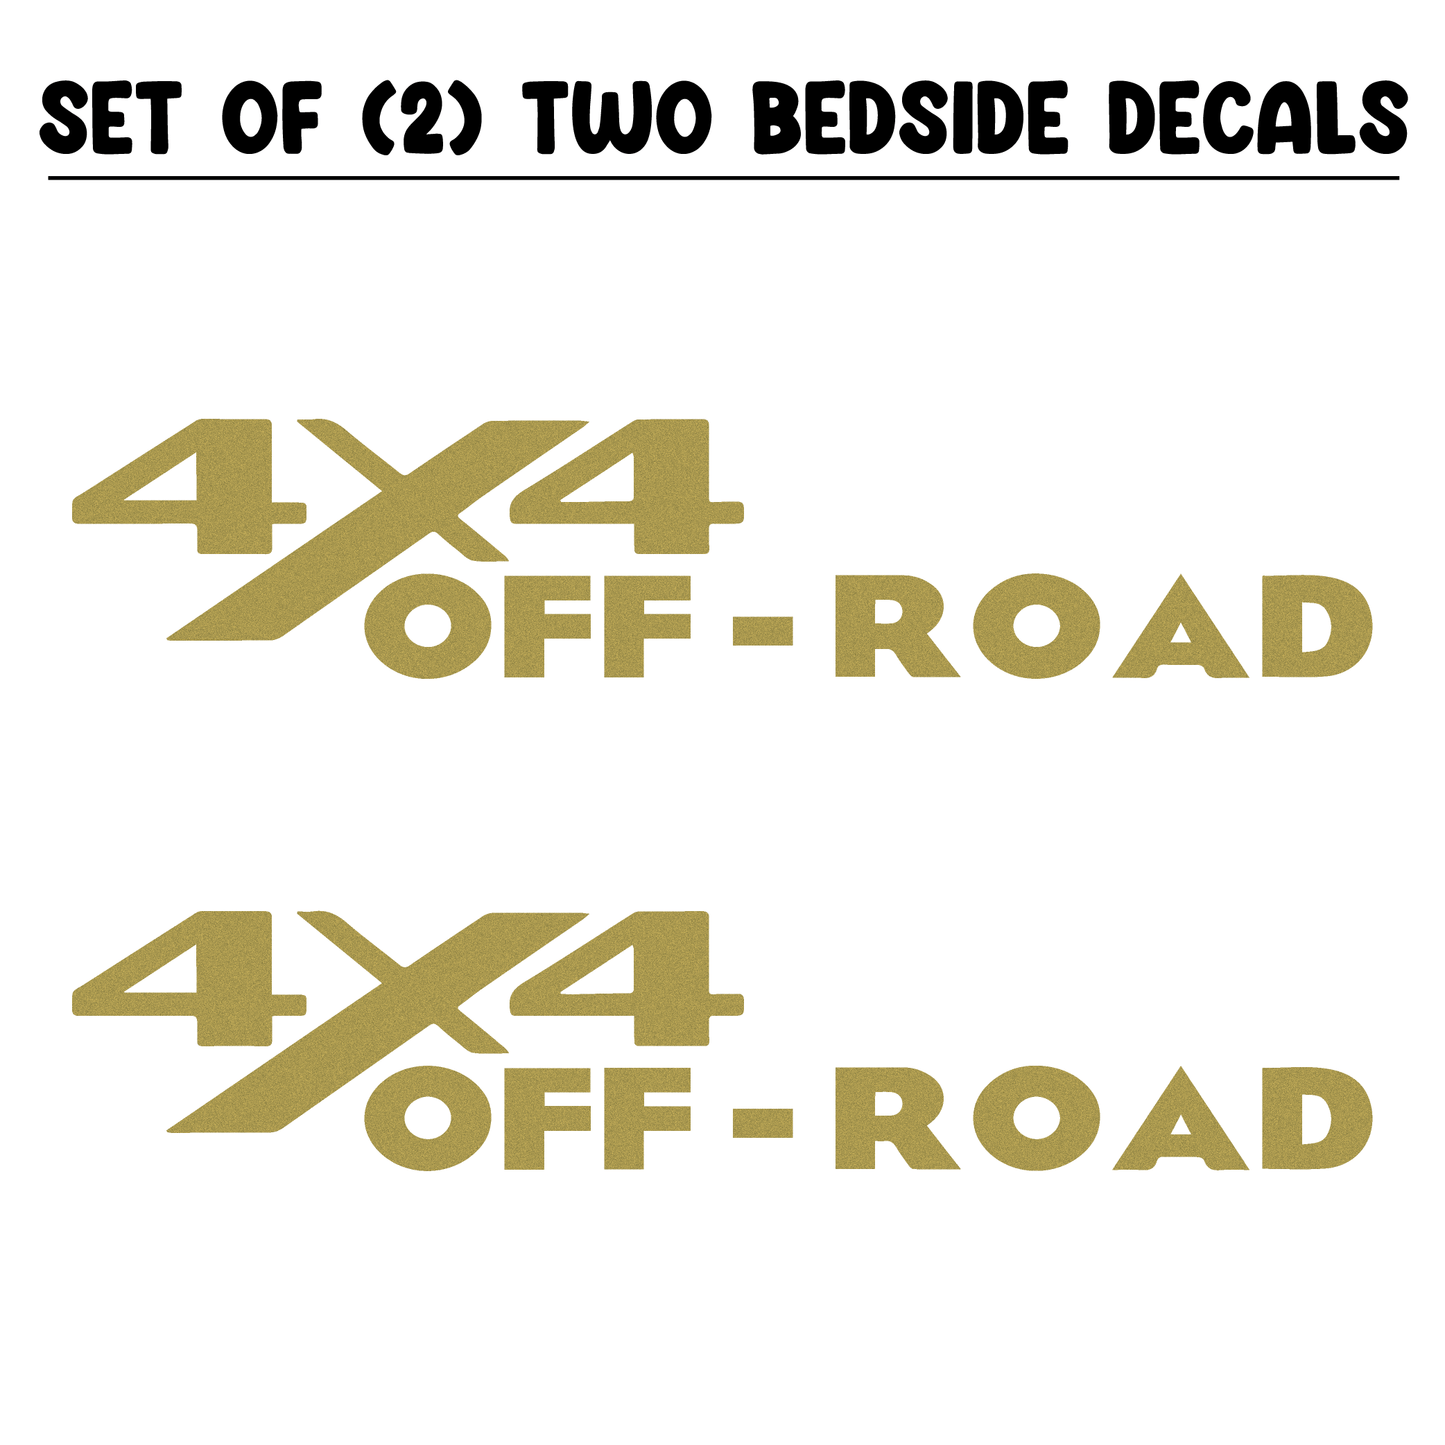 Shop Vinyl Design RAM Trucks 4 x 4 Off Road Replacement Bedside Decals #13 Vehicle 001 Gold Metallic Shop Vinyl Design decals stickers